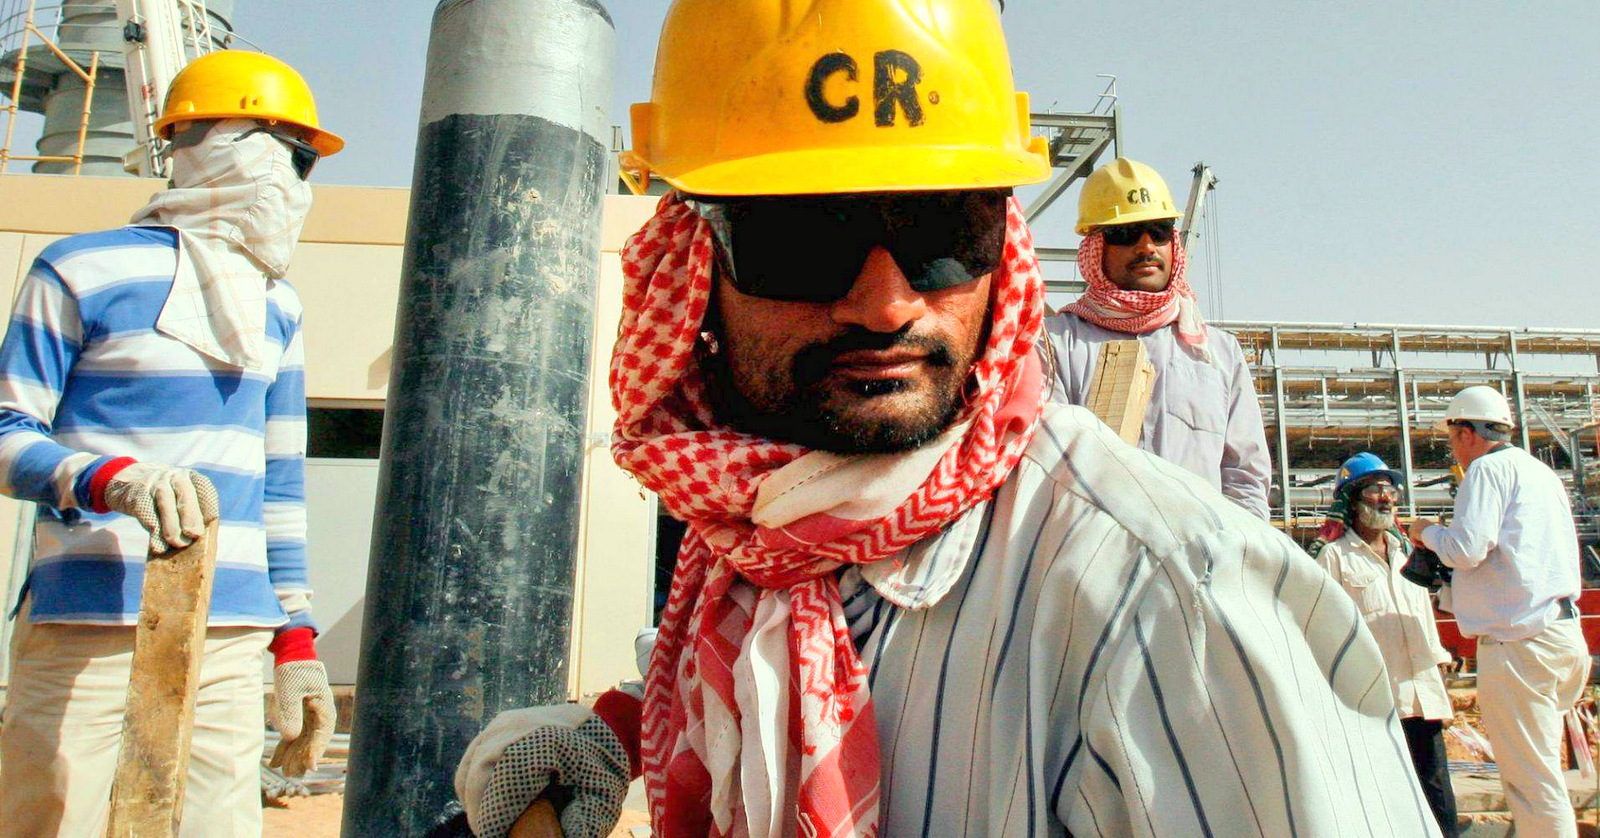 Workers at an oil facility near Riyadh, Saudi Arabia. Photo: (Hasan Jamali | AP)